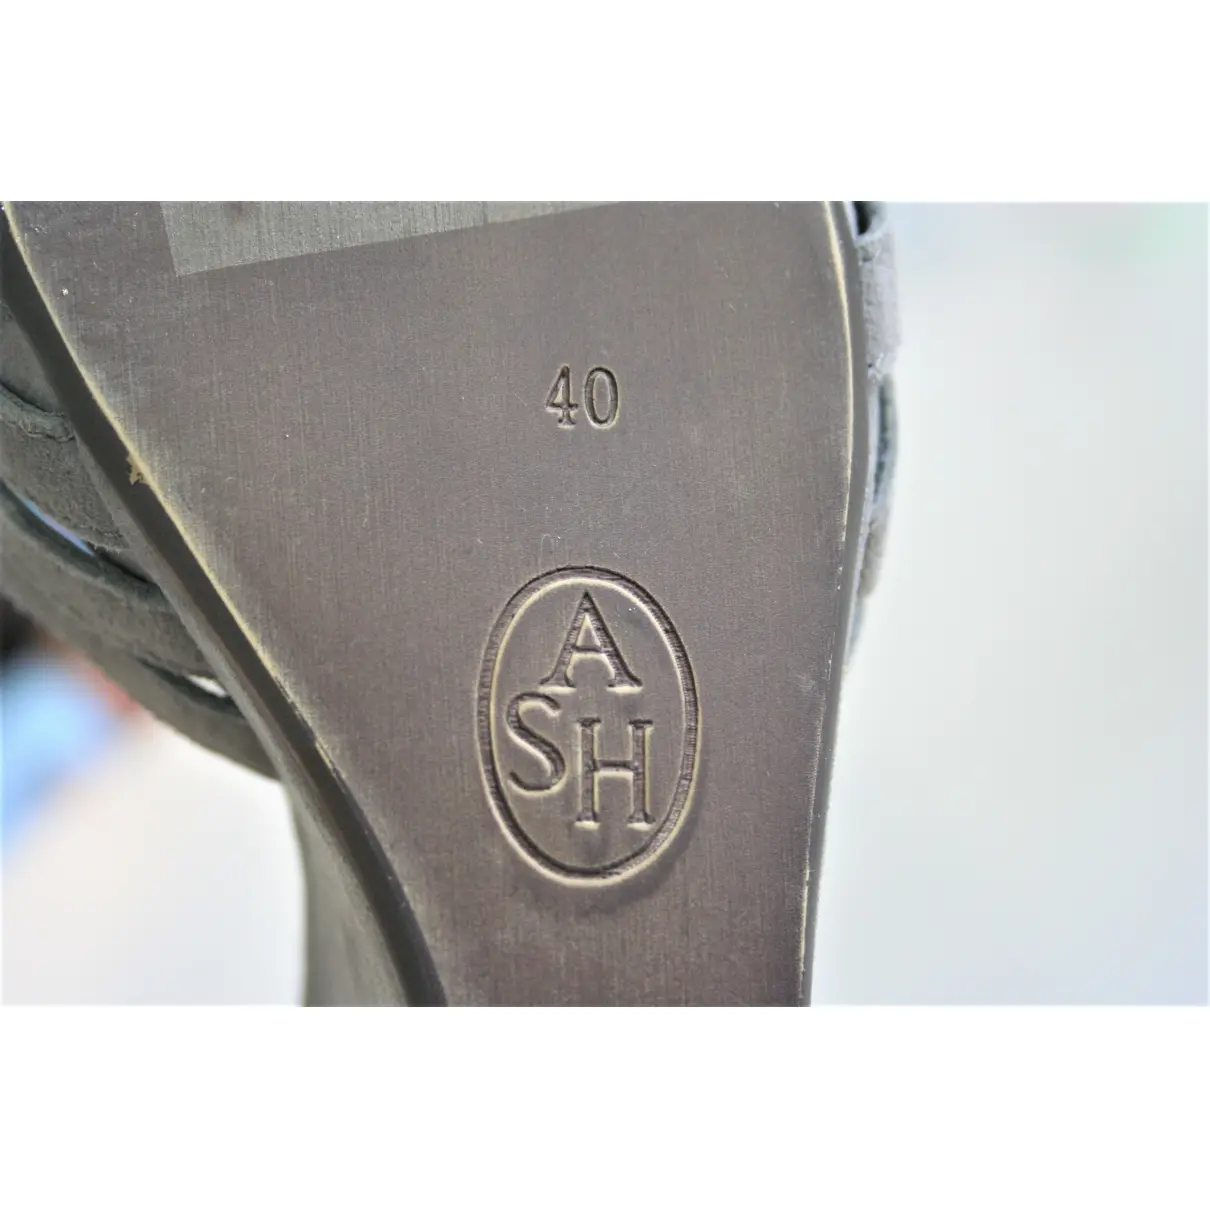 Buy Ash Khaki Suede Sandals online